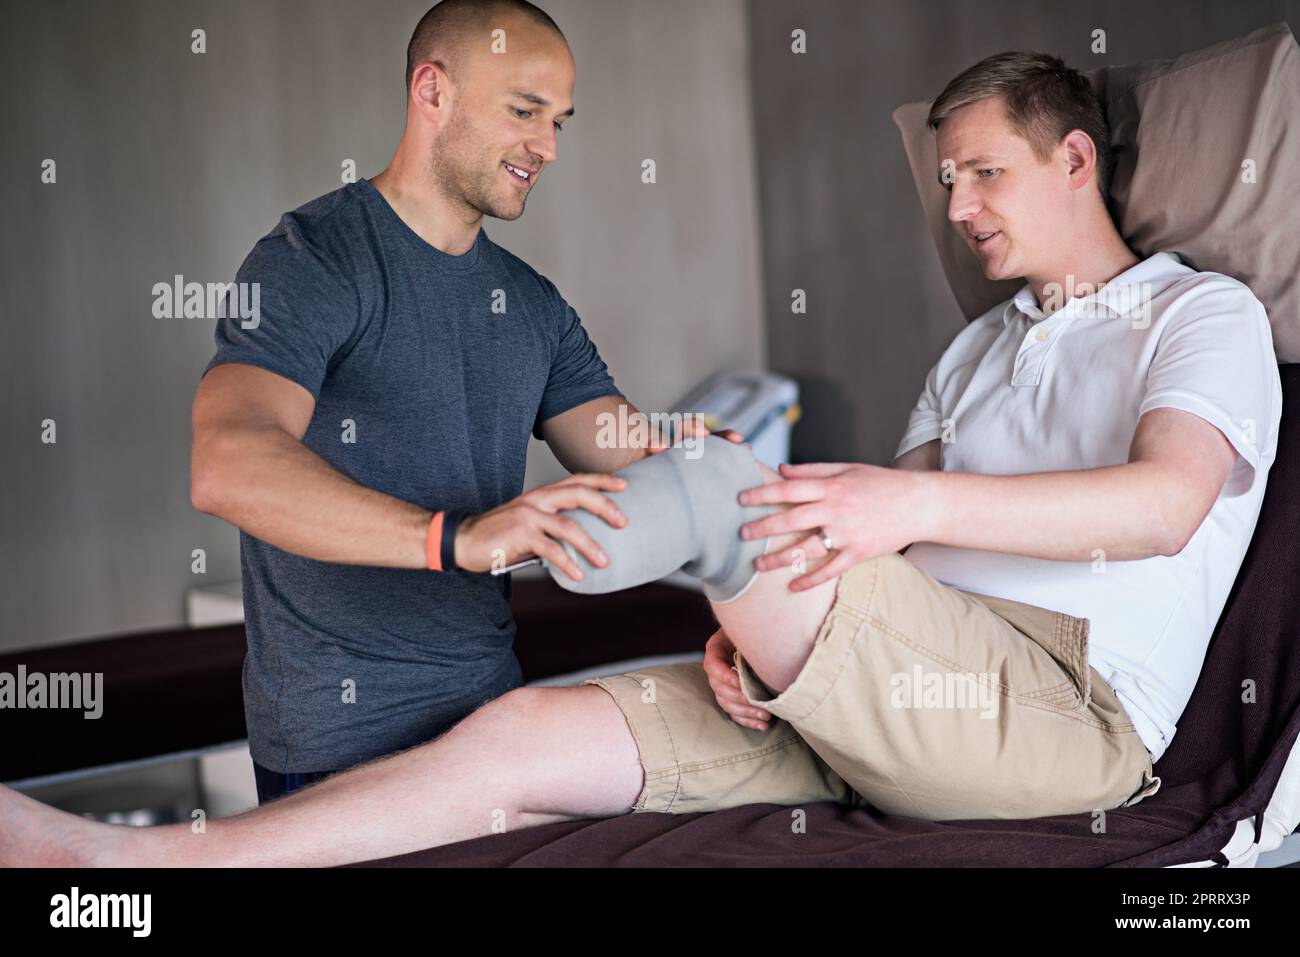 Immer auf der Suche nach Problemen. Ein Physiotherapeut untersucht einen Mann mit einem amputierten Bein. Stockfoto